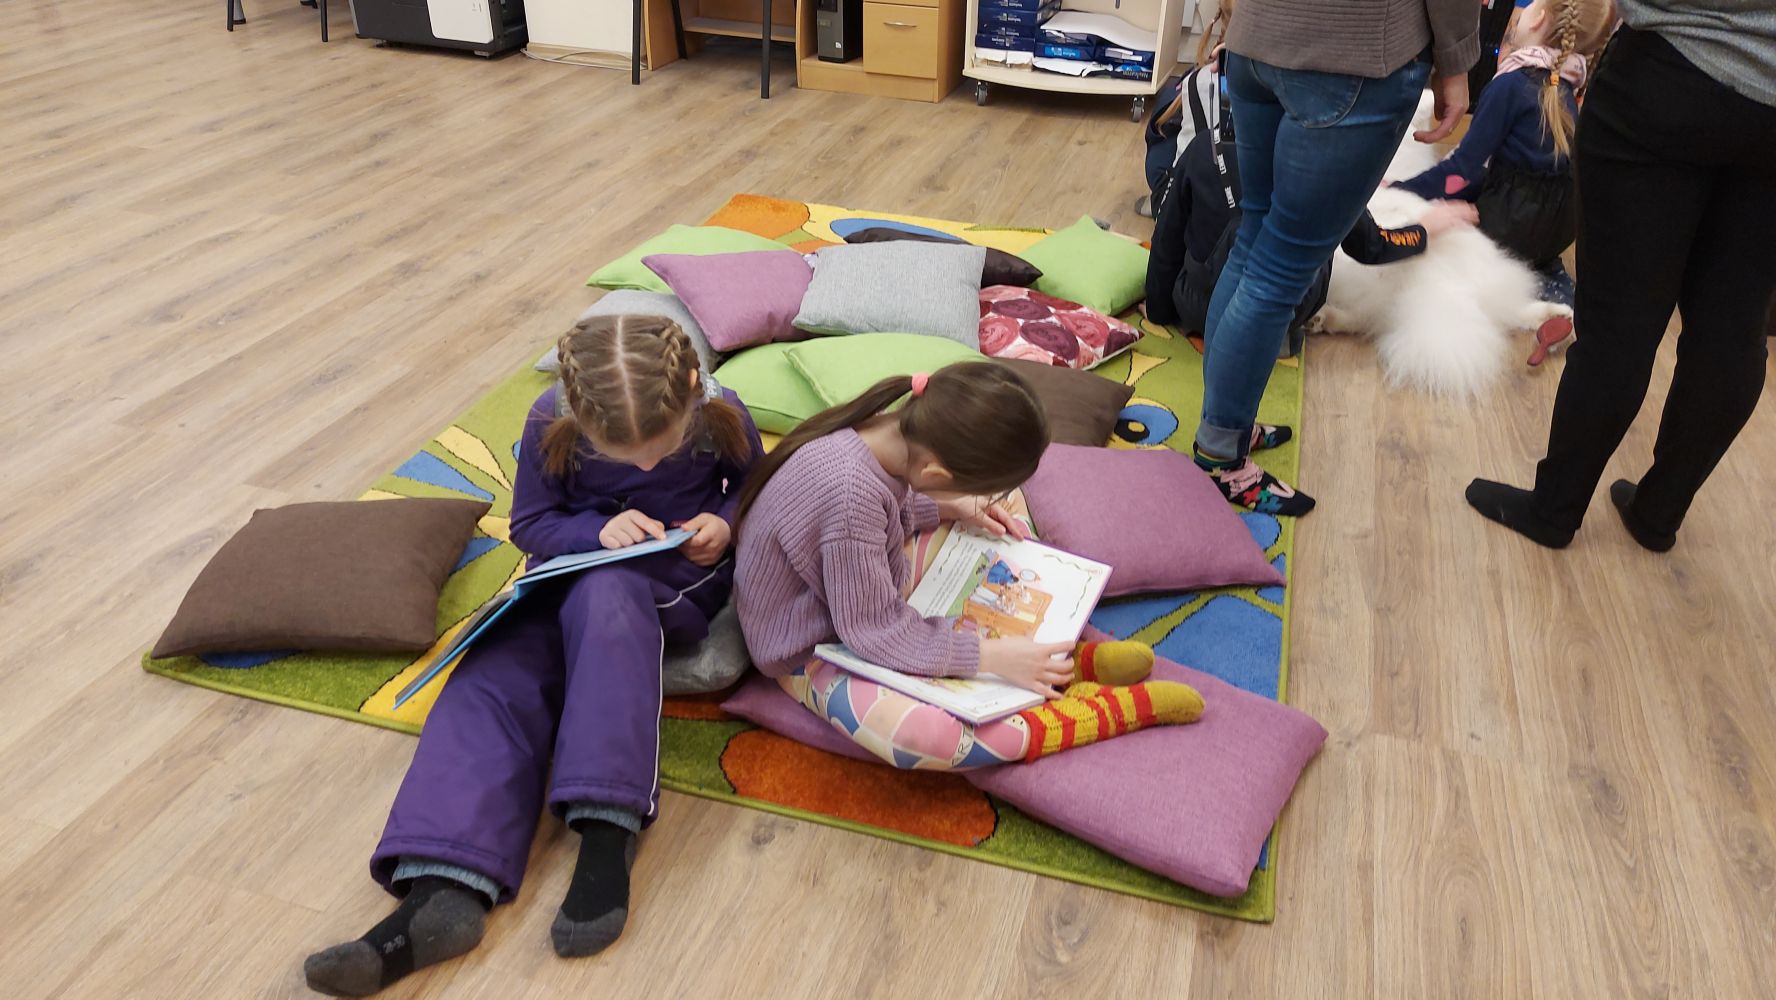 Bērni iepazīstas ar bibliotēkas krājumā esošajām grāmatām.